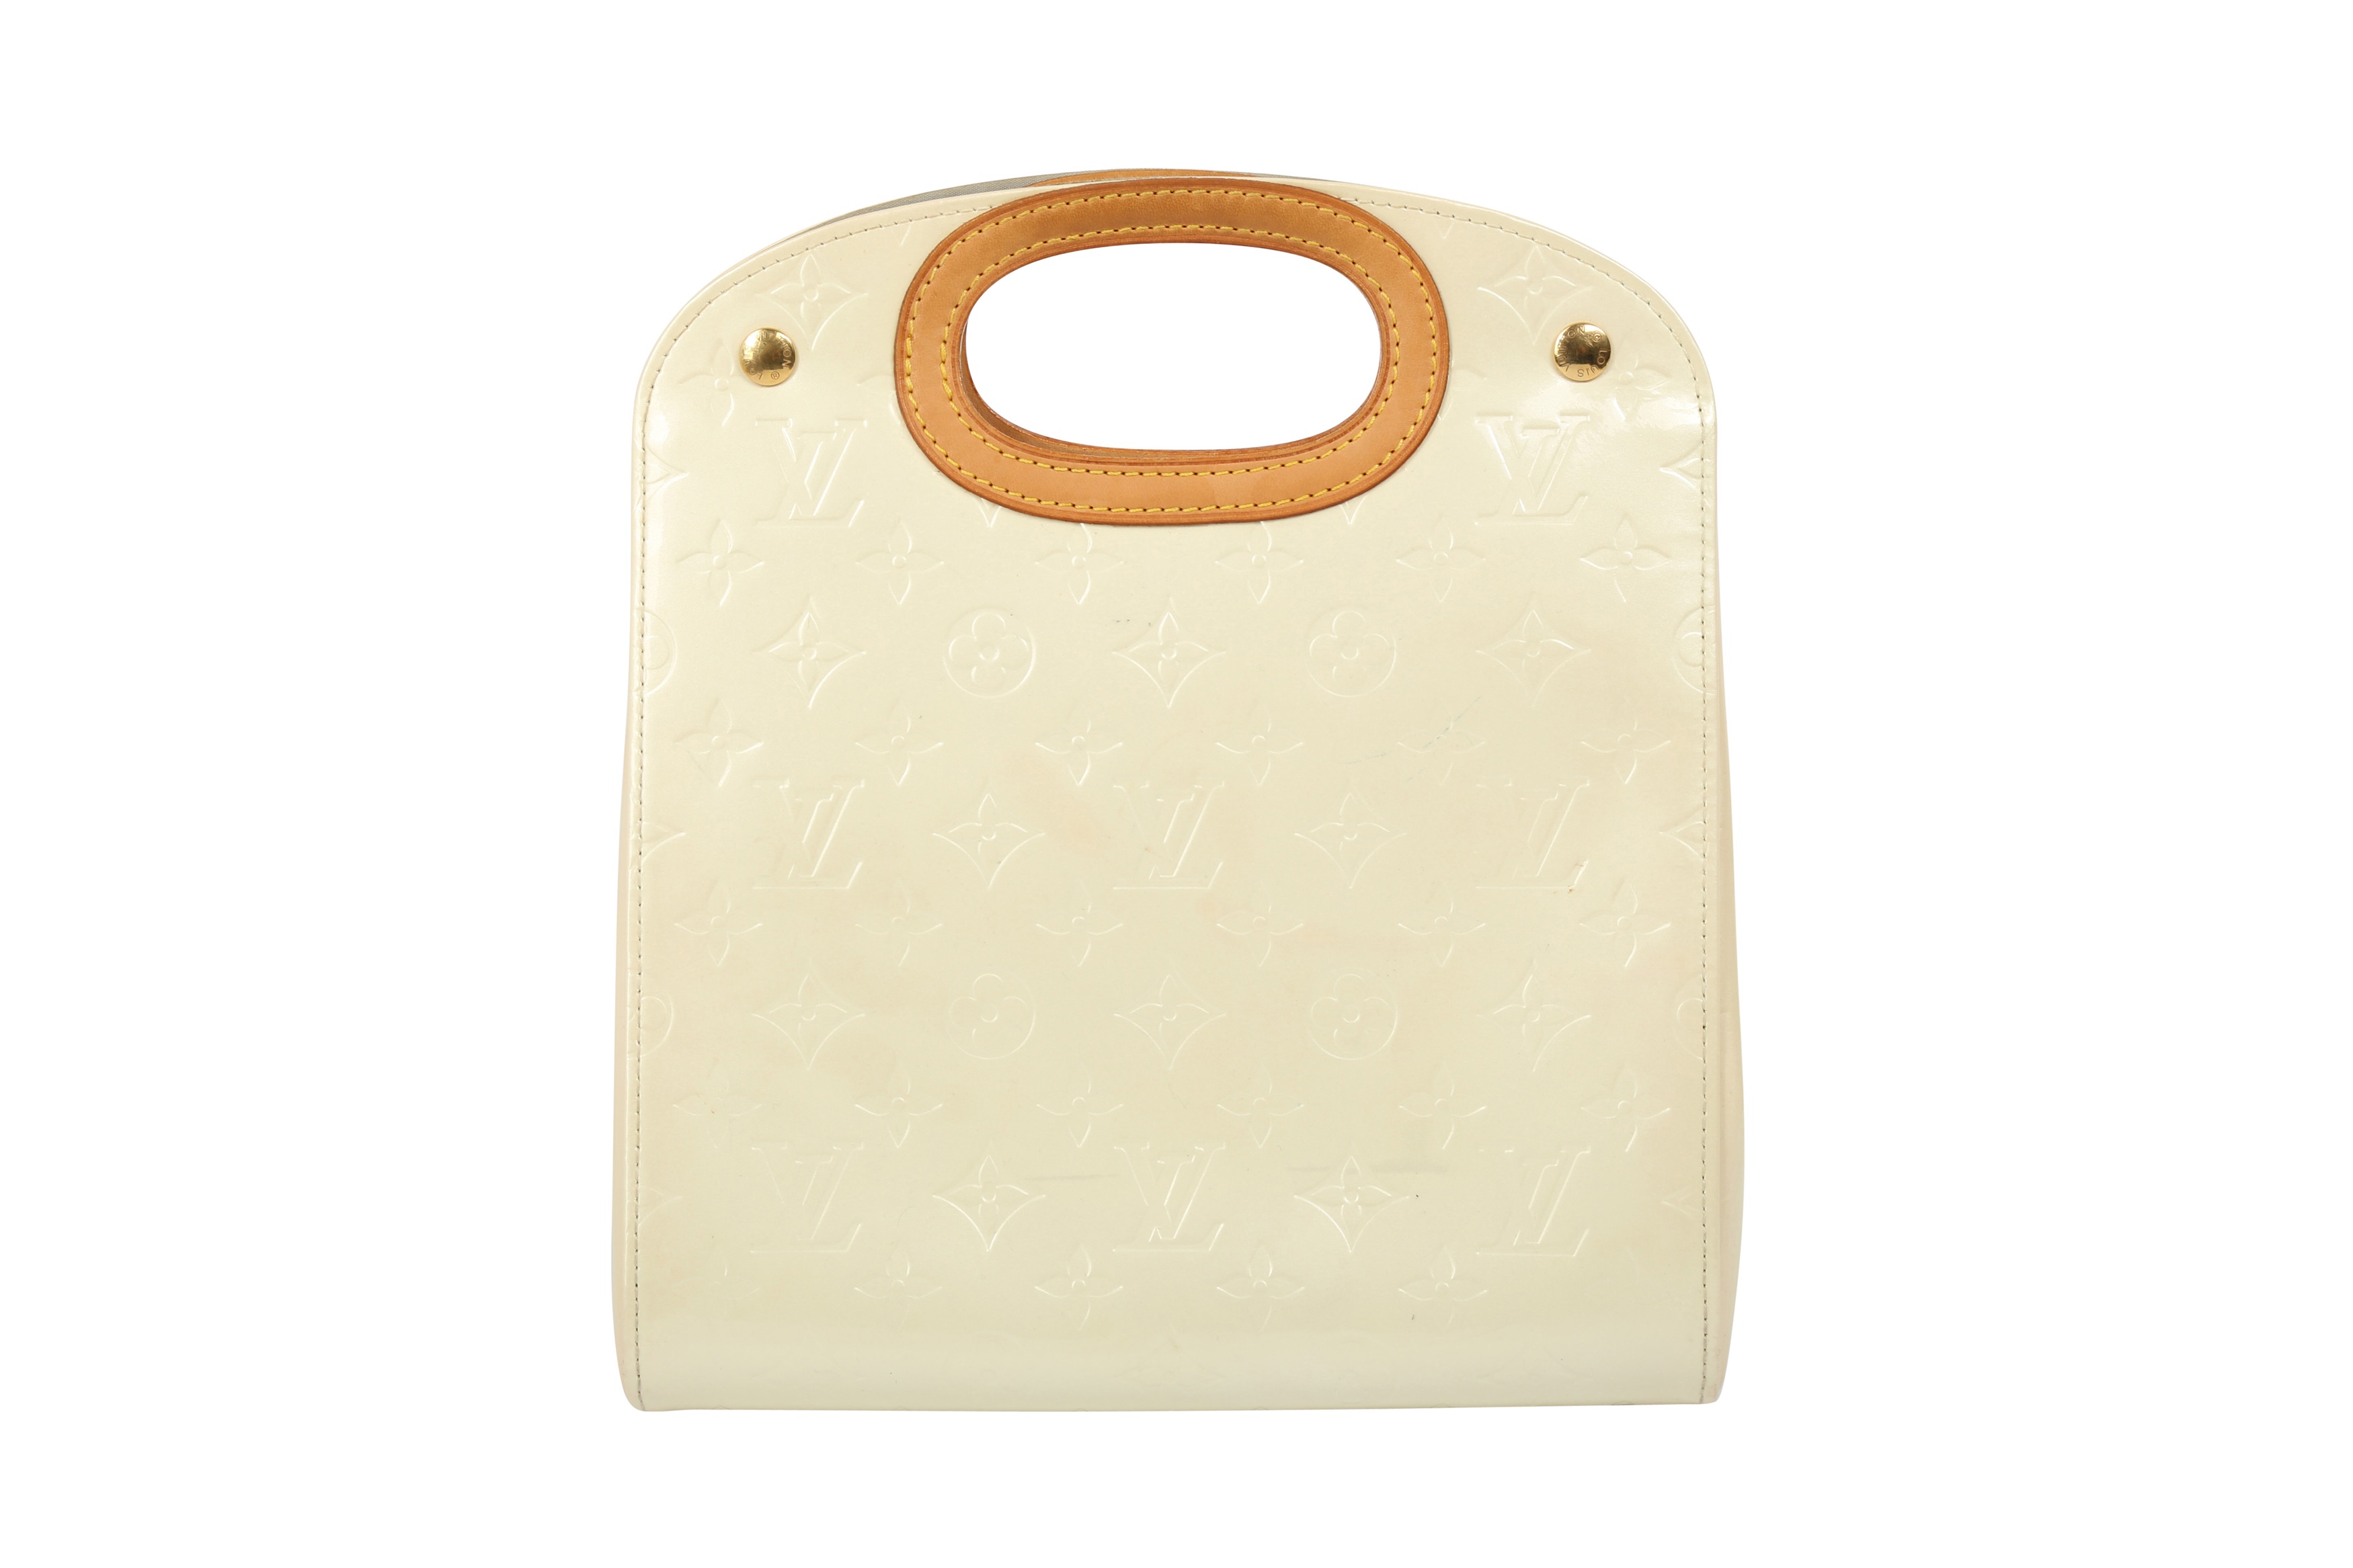 Louis Vuitton Vernis Leather Maple Drive Handbag